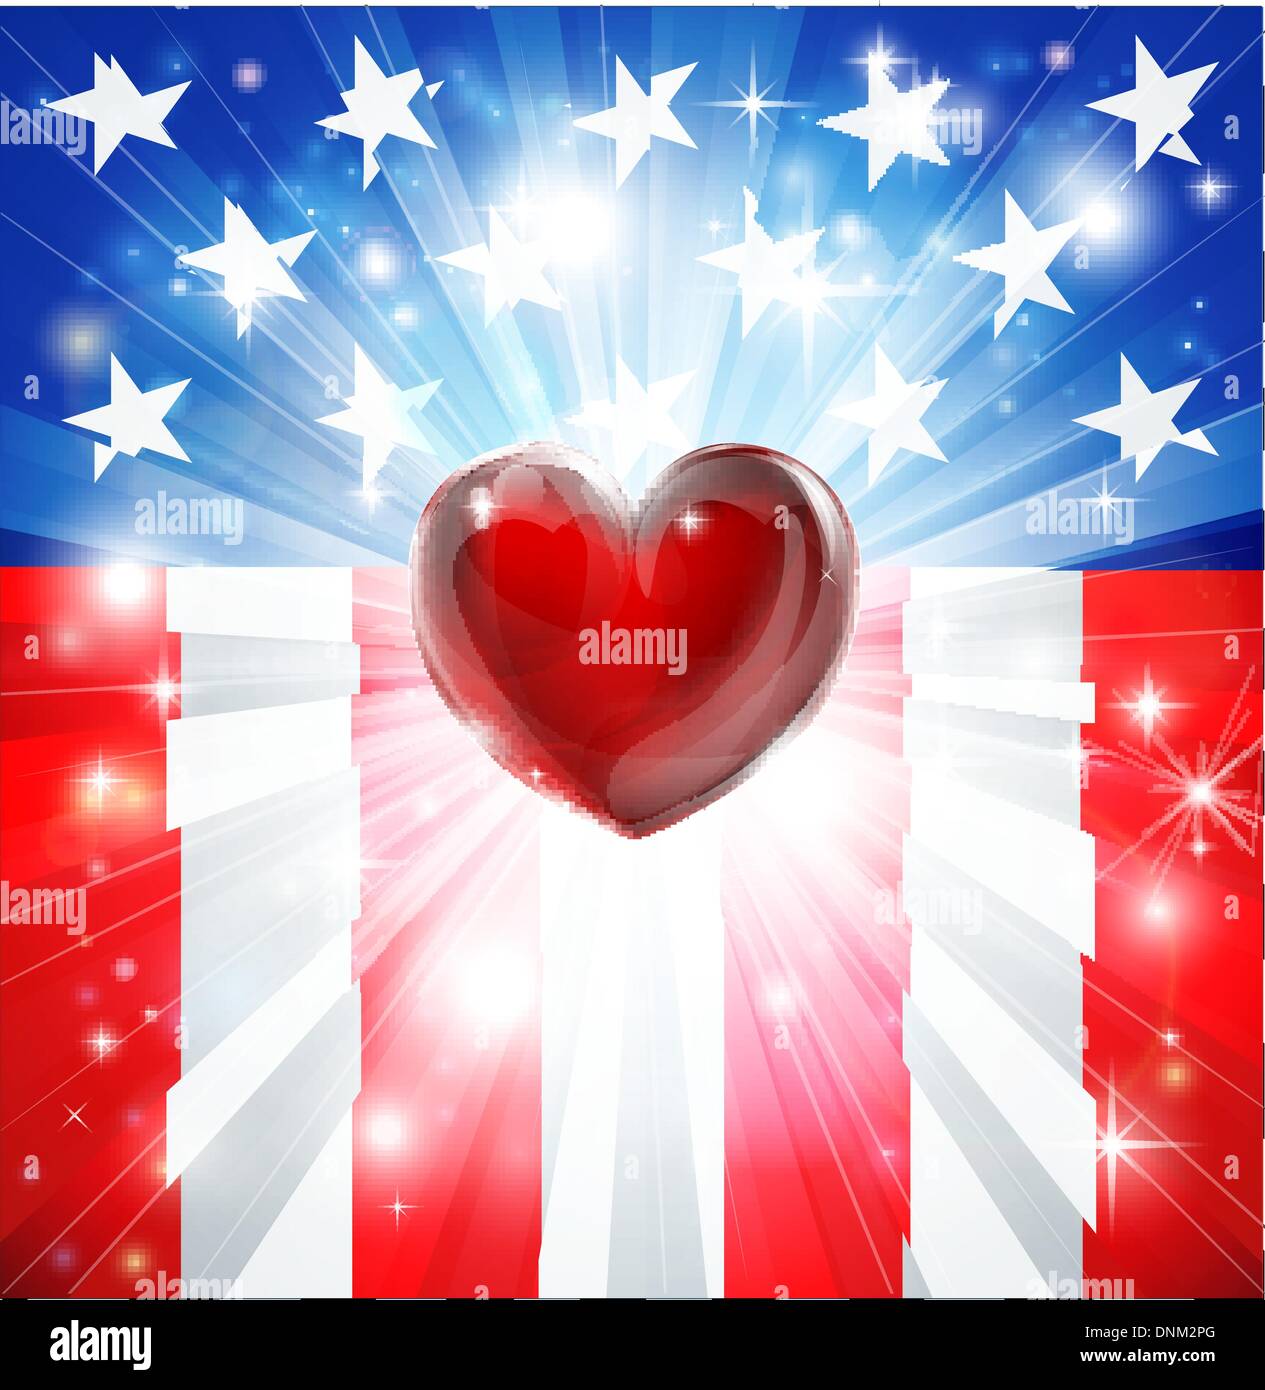 Amerikanische Flagge patriotischen Hintergrund mit Herz, Konzept für die Liebe zum Vaterland. Ideal für 4. Juli oder militärische Themen. Stock Vektor